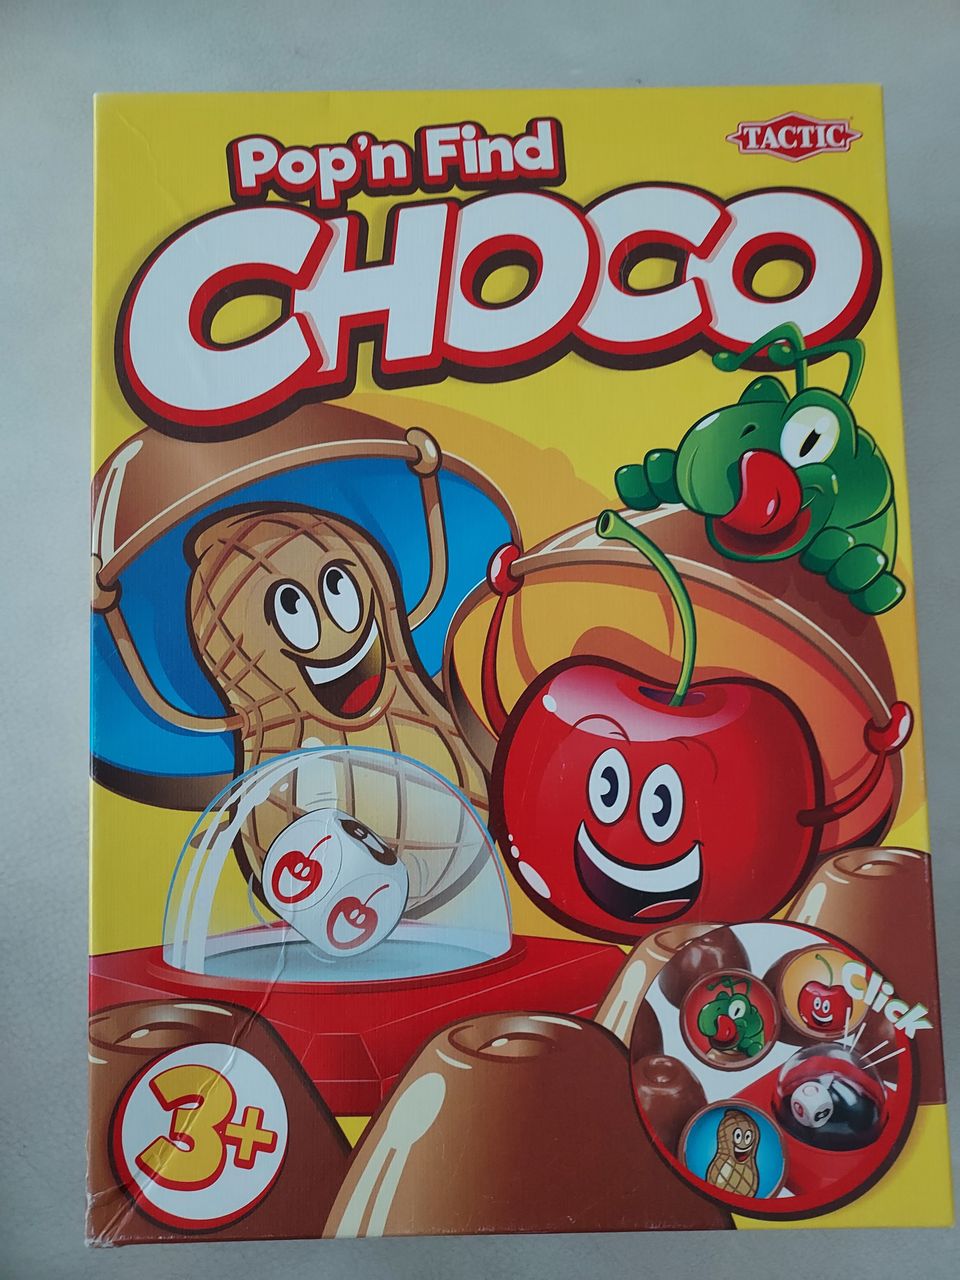 Choco lautapeli